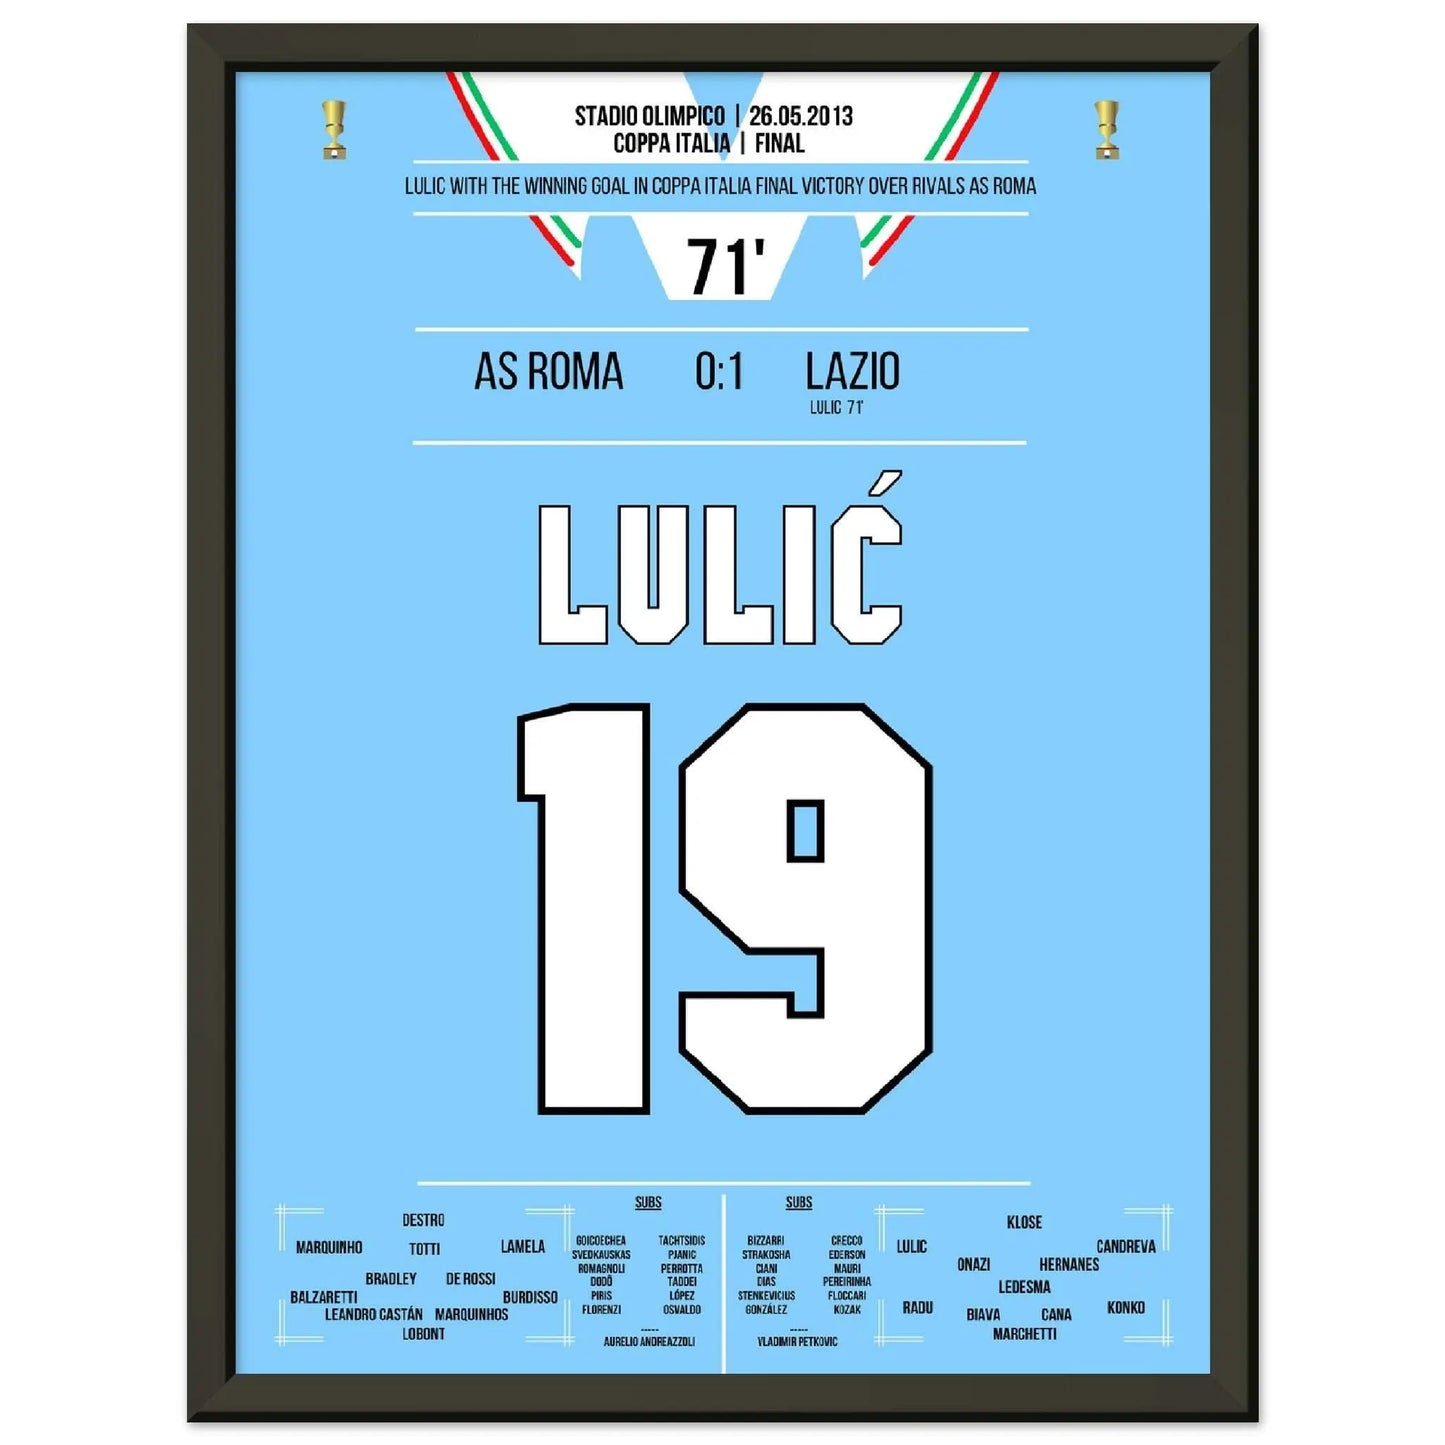 Lulic marque le but vainqueur de la finale de la Coppa Italia 2013